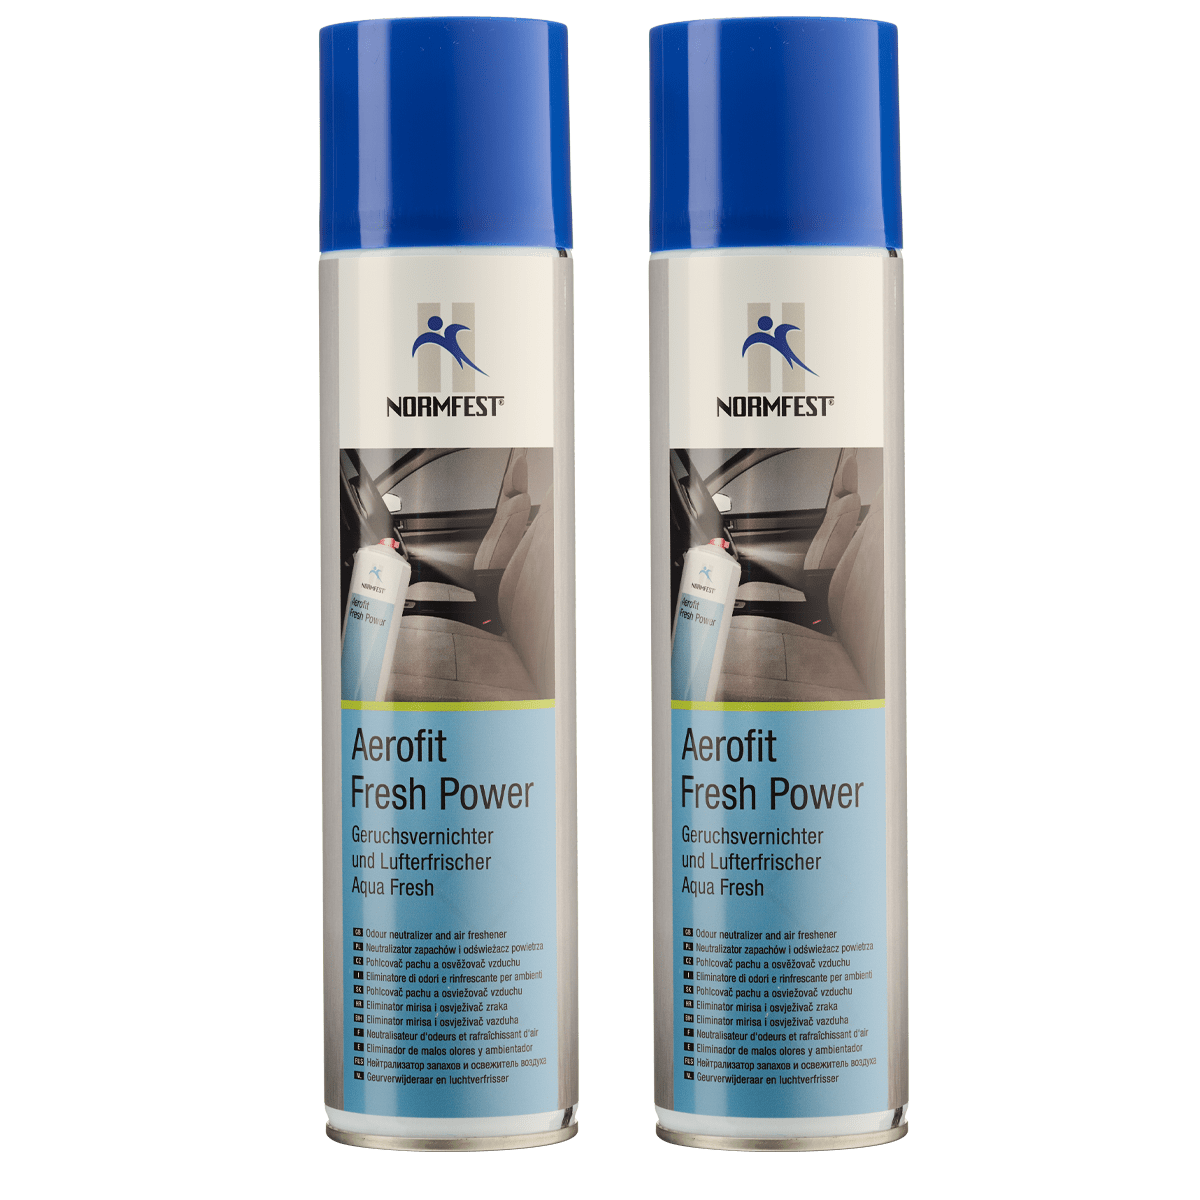 Normfest Aerofit Geruchsvernichter und Lufterfrischer Coolwaterduft 2x 400 ml